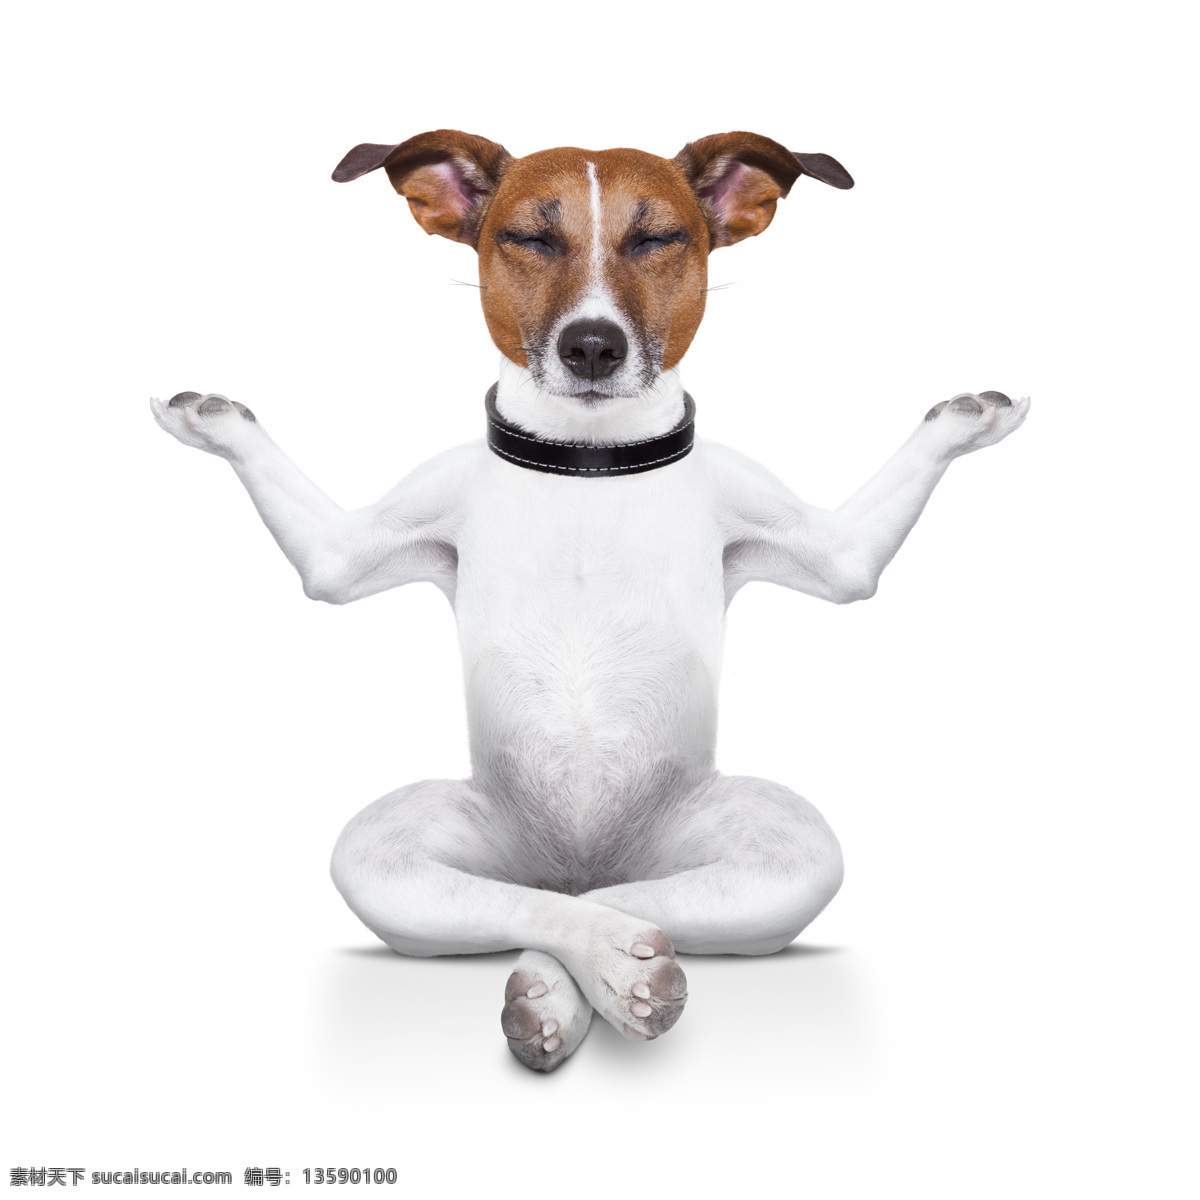 练 瑜伽 小狗 练瑜伽的小狗 养生 健身 练瑜伽小狗 动物 生活人物 人物图片